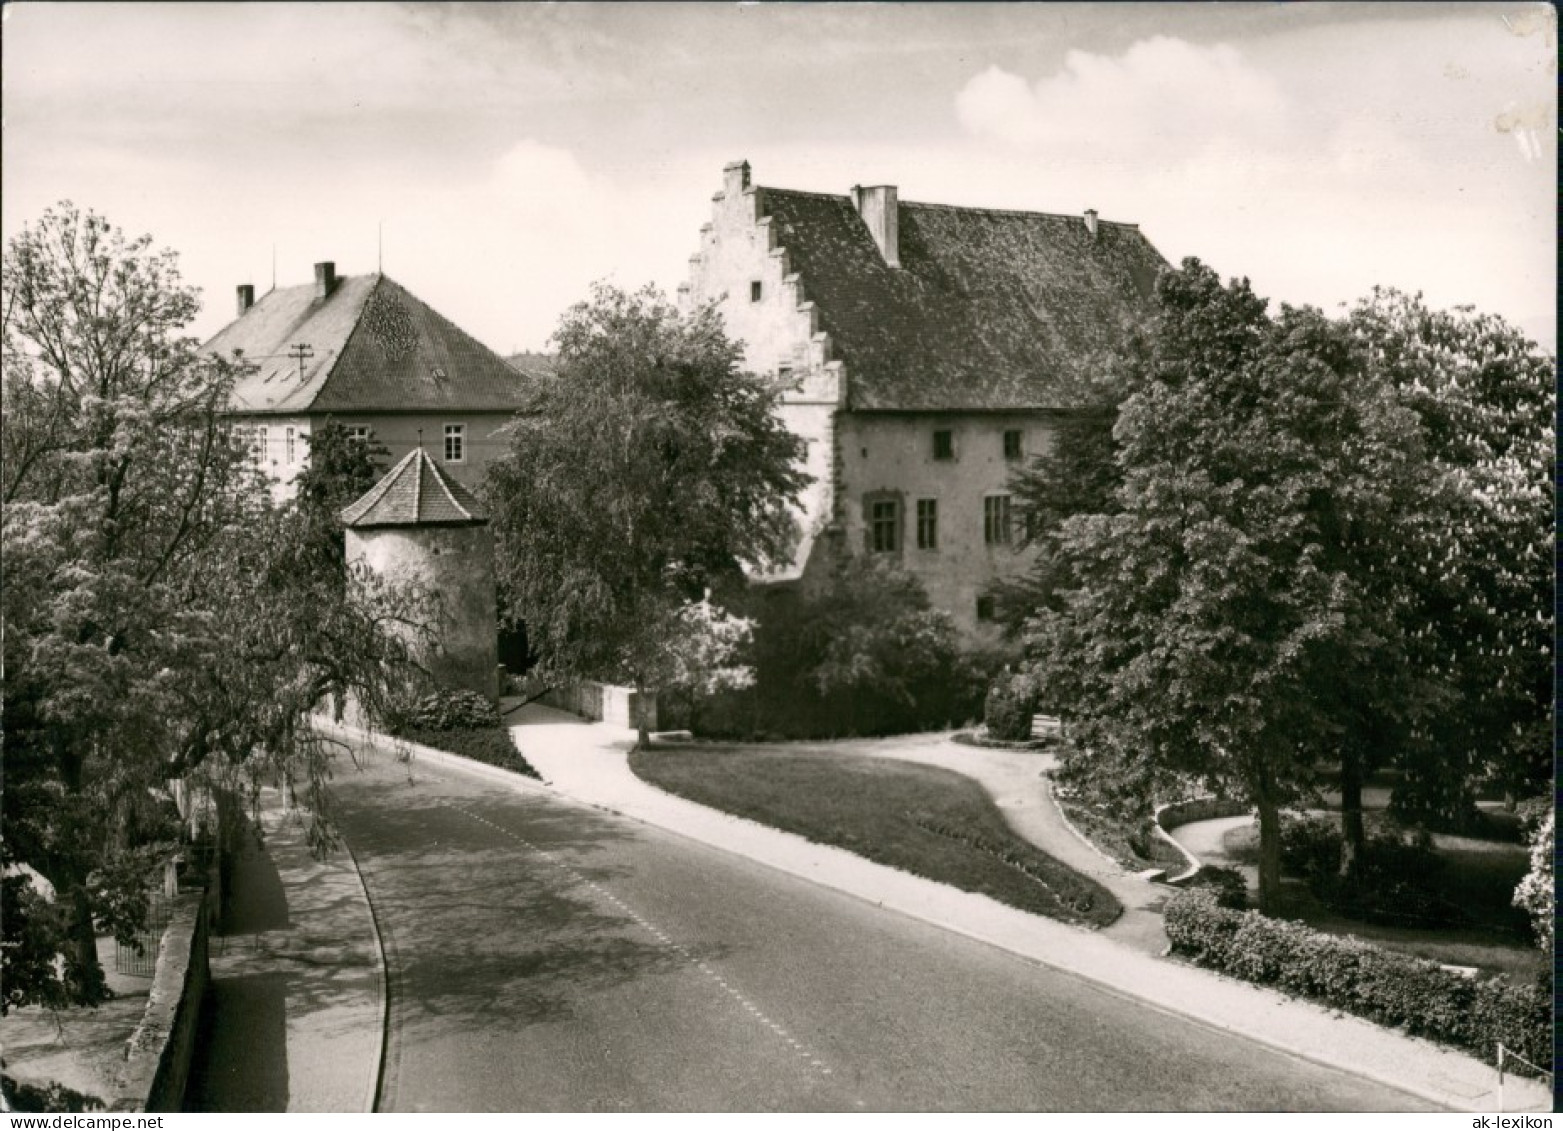 Mellrichstadt Strassen Partie Am Schloss/Strassen Partie Am Schloss 1965 - Mellrichstadt